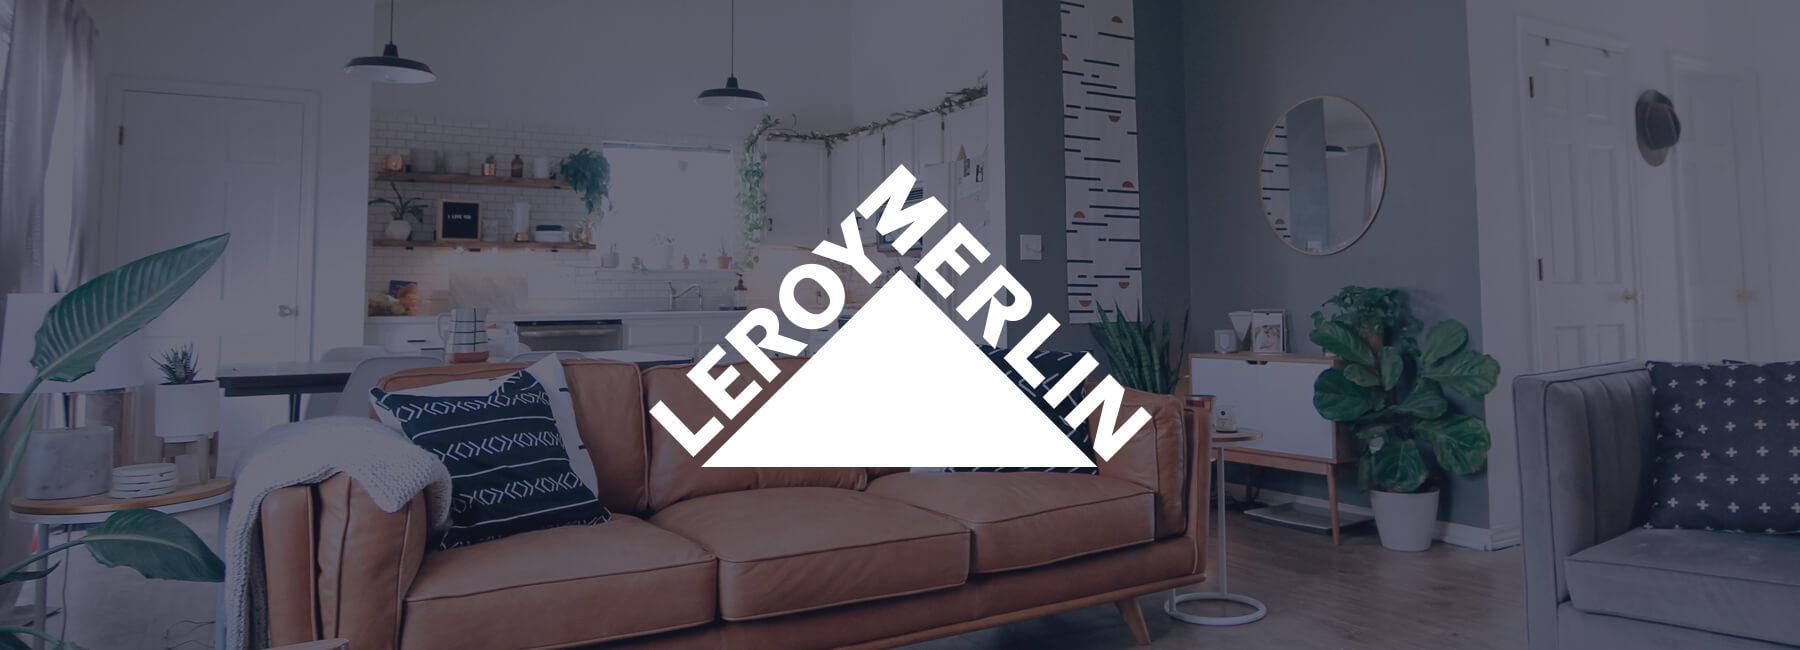 Leroy Merlin steigert Konversionen mit Mopinion